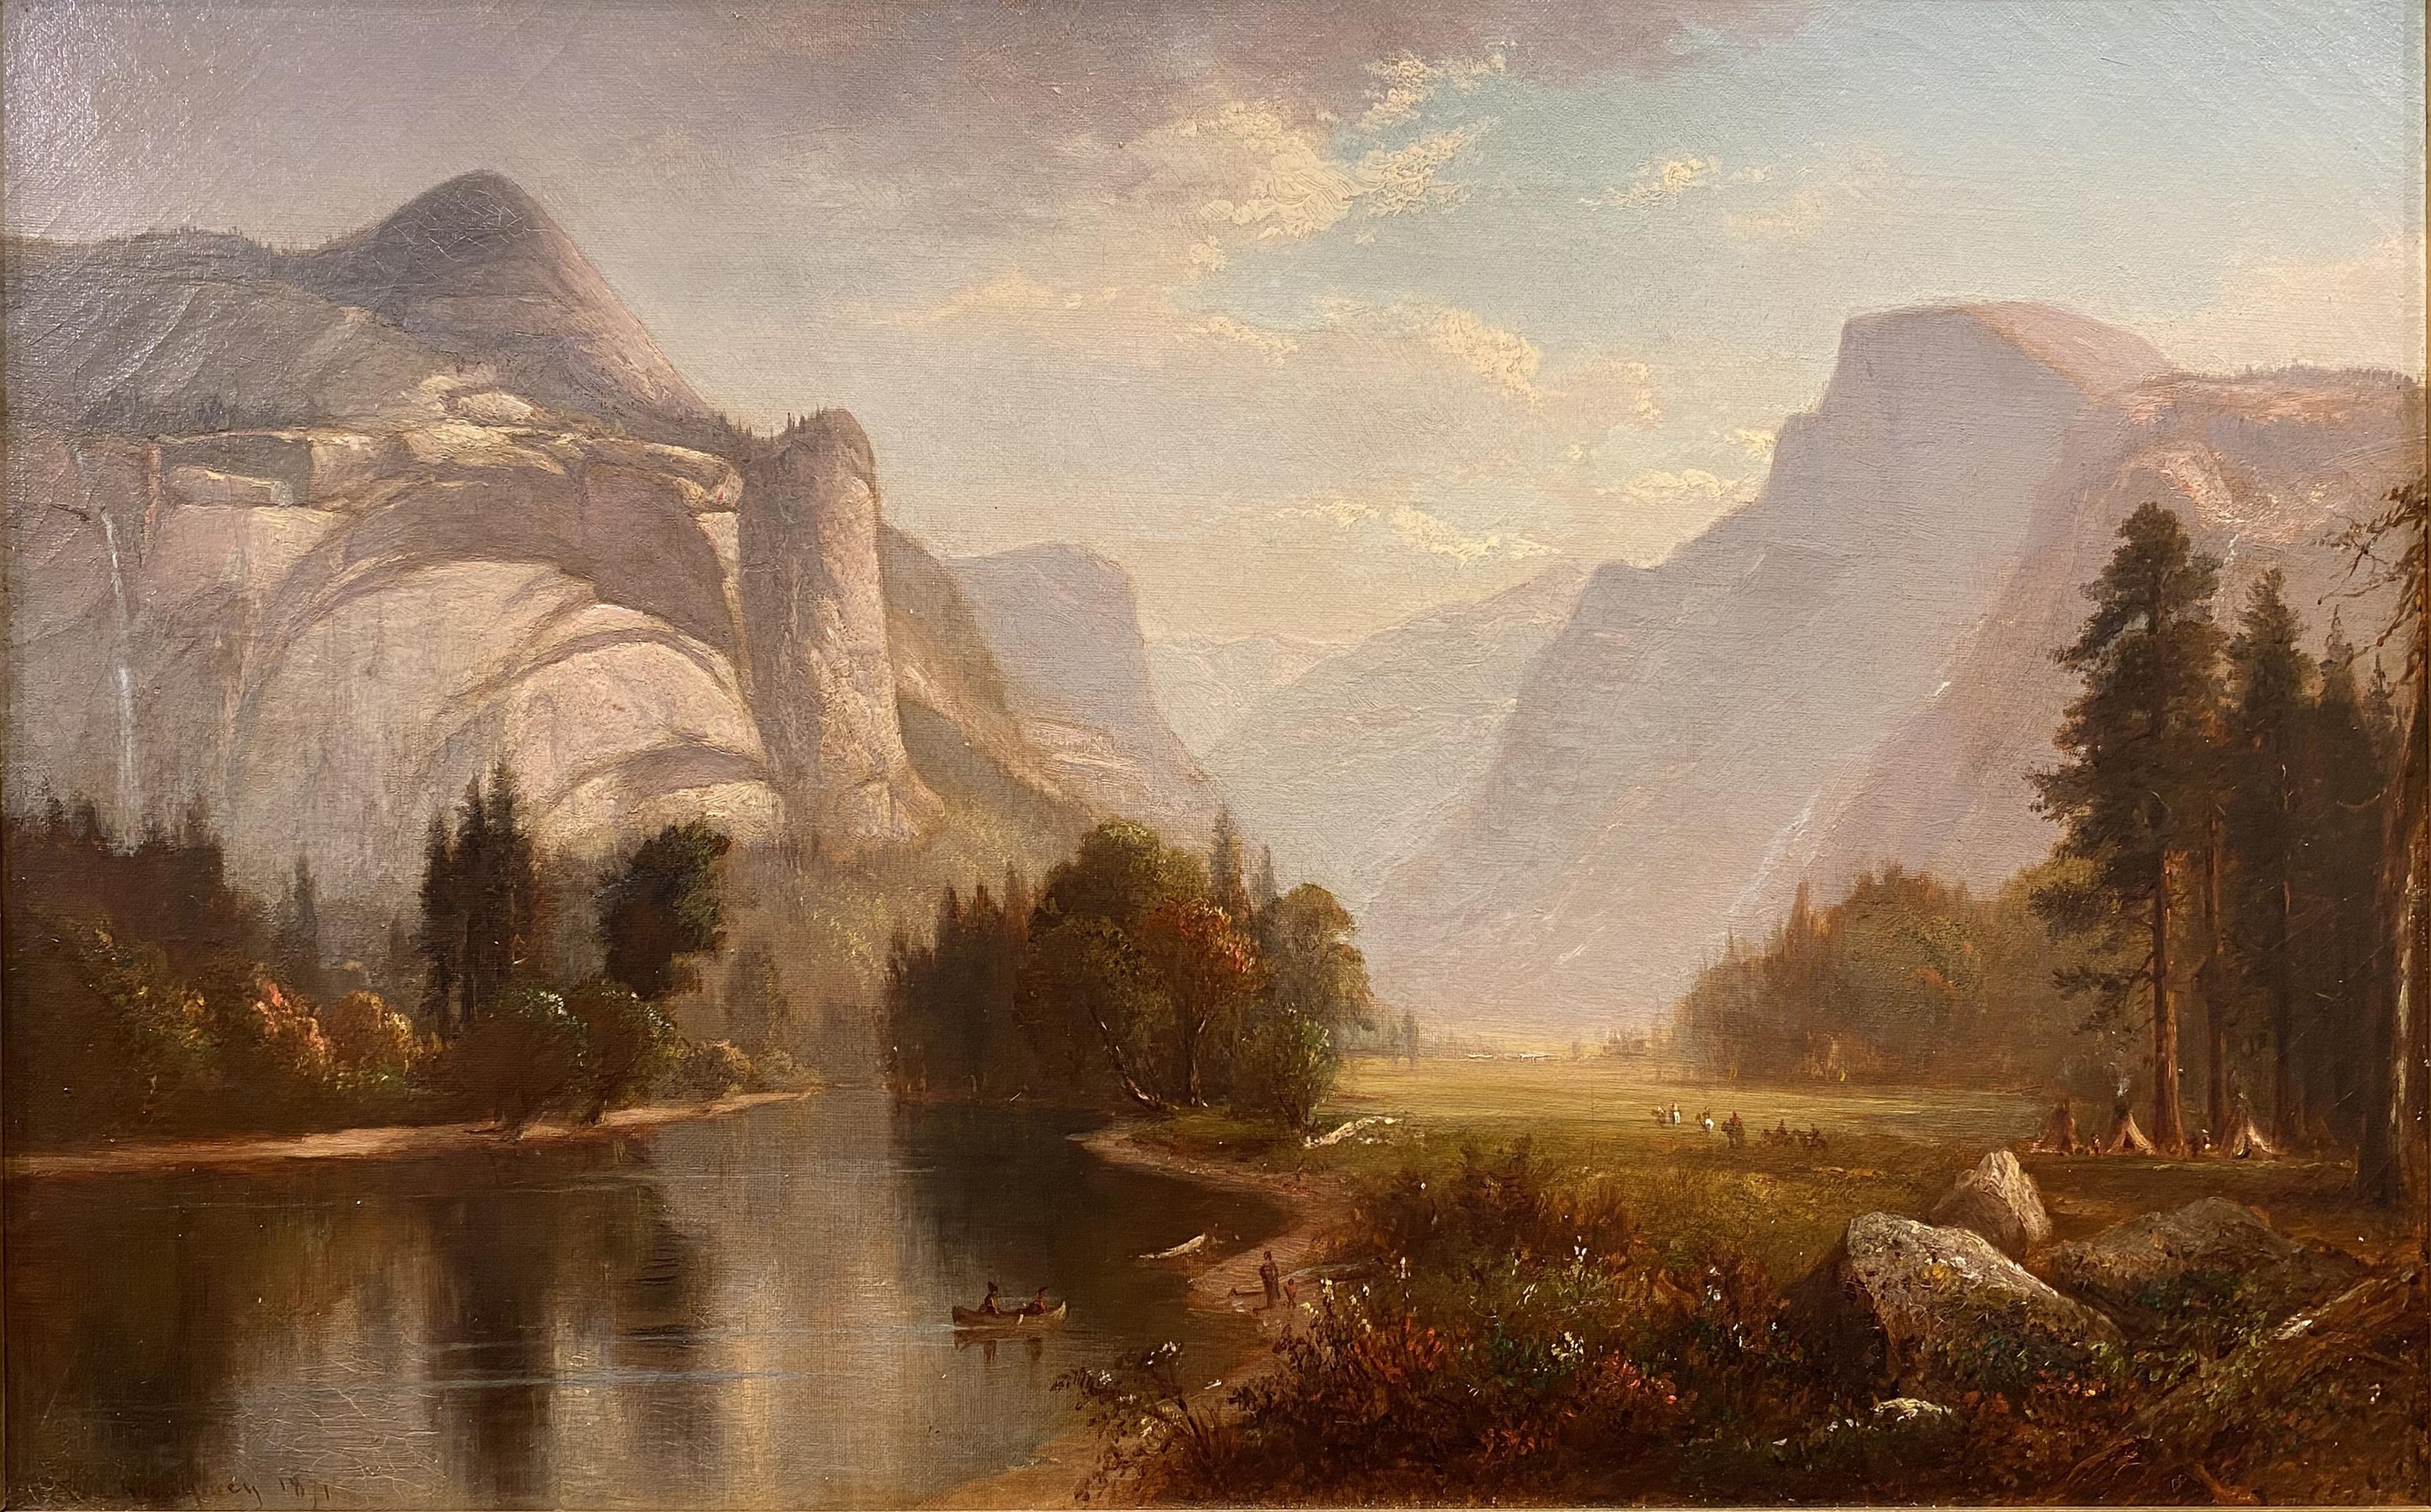 Eine majestätische Landschaft des Yosemite in Kalifornien von American  Künstler Benjamin Champney (1817-1907). Champney wurde in New Ipswich, New Hampshire, geboren und begann seine Karriere als Lithograf in Boston. Anschließend ging er zusammen